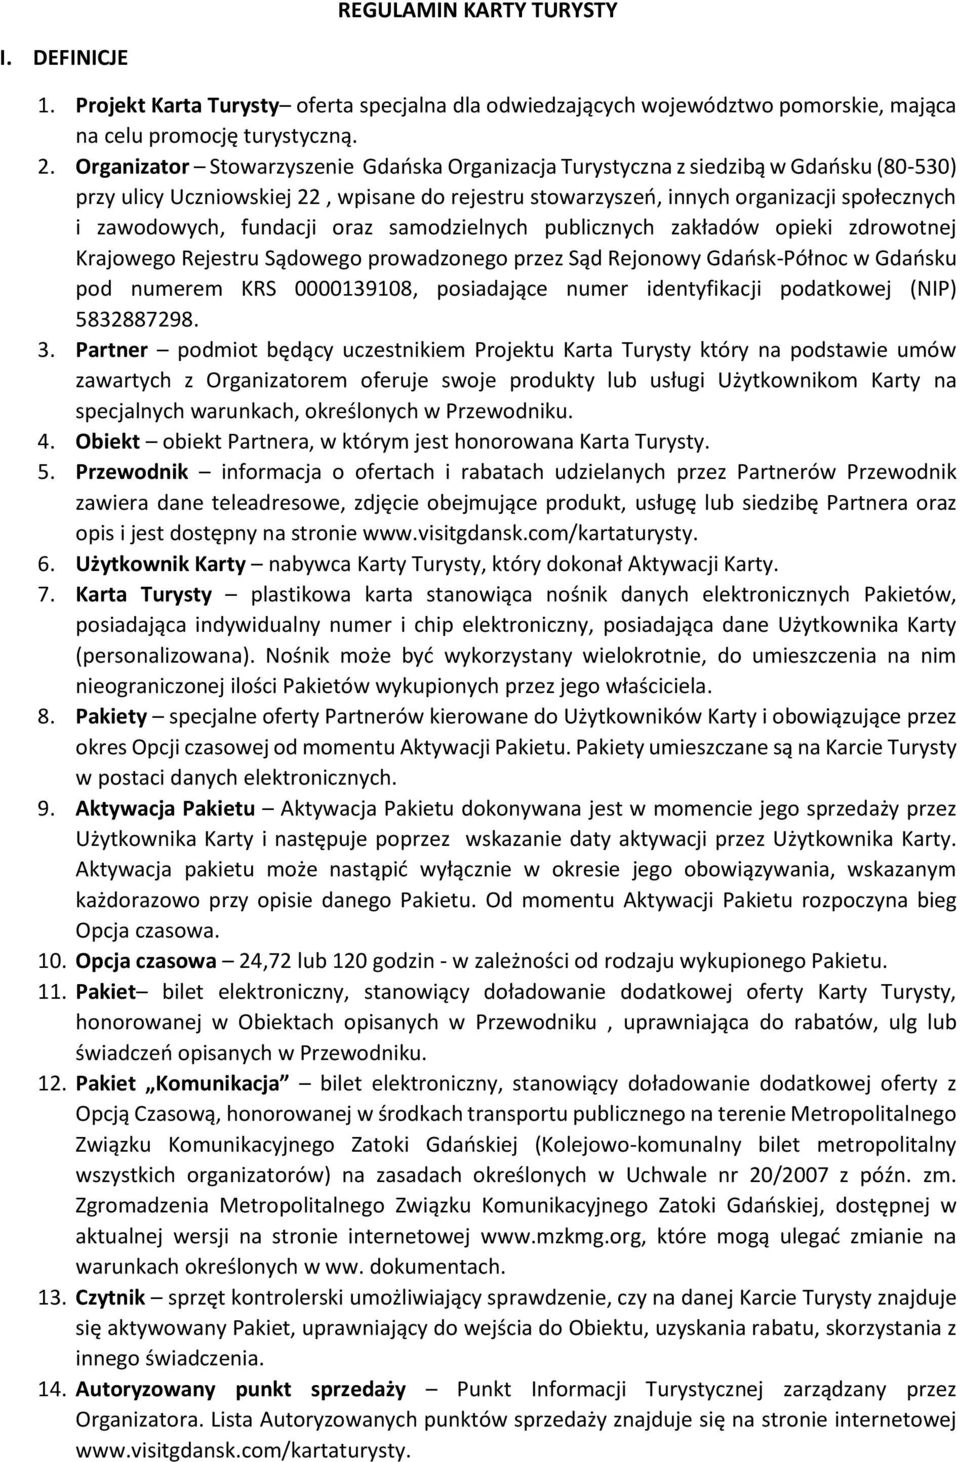 fundacji oraz samodzielnych publicznych zakładów opieki zdrowotnej Krajowego Rejestru Sądowego prowadzonego przez Sąd Rejonowy Gdańsk-Północ w Gdańsku pod numerem KRS 0000139108, posiadające numer